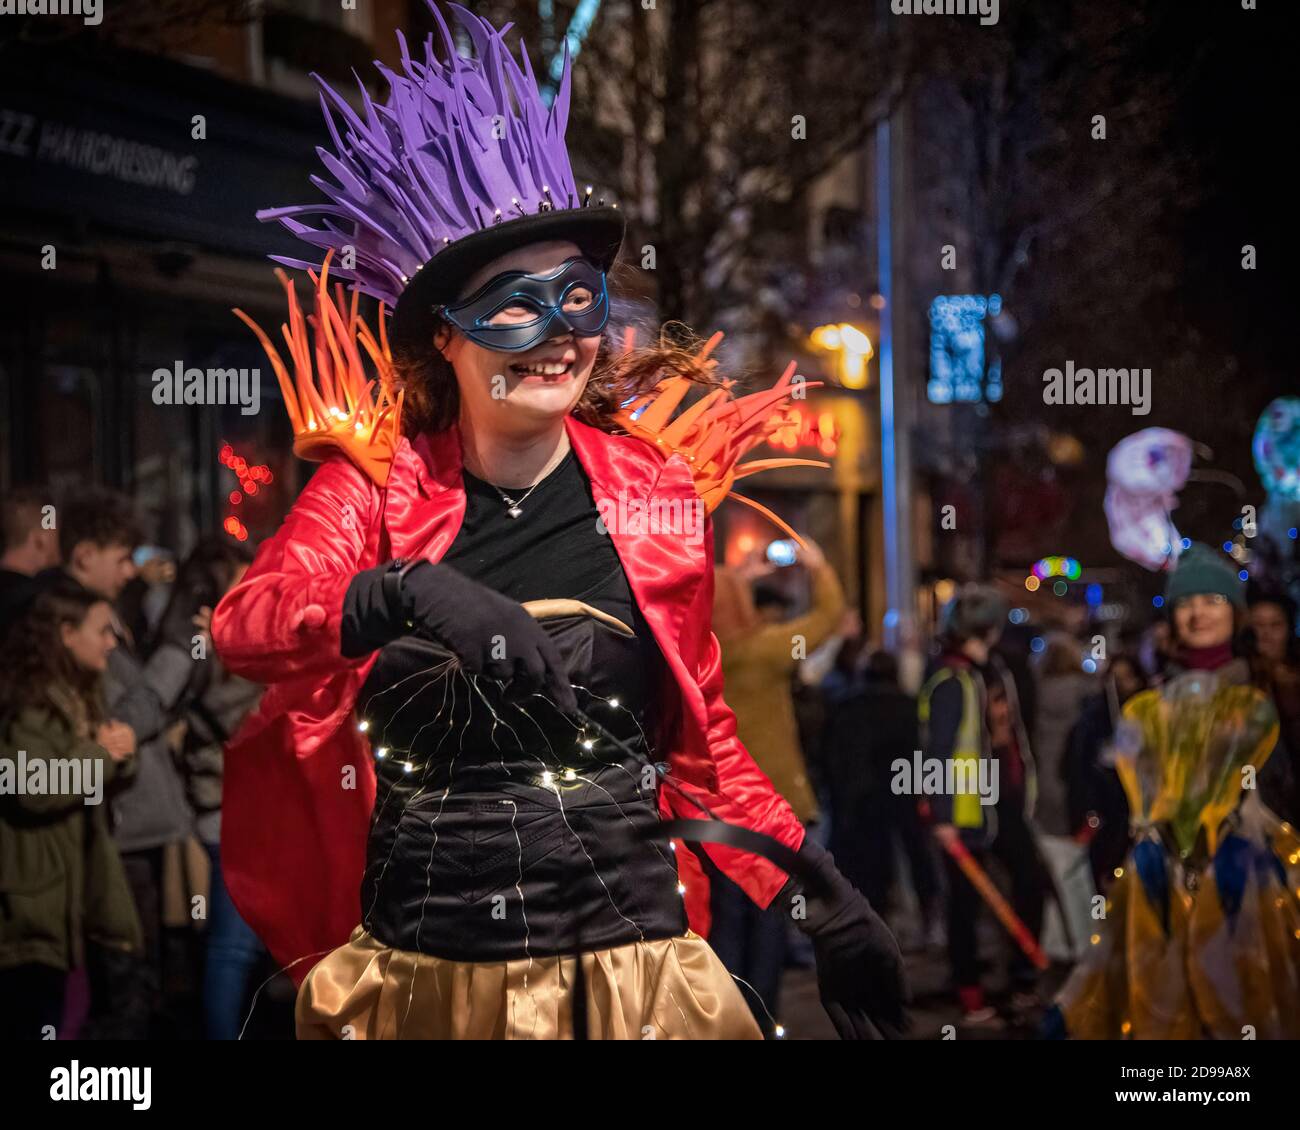 Nottigham, UK - Feb 2020: Dama ballare e indossare un costume ring Masters, mentre conduce la sfilata durante la festa annuale della luce Foto Stock